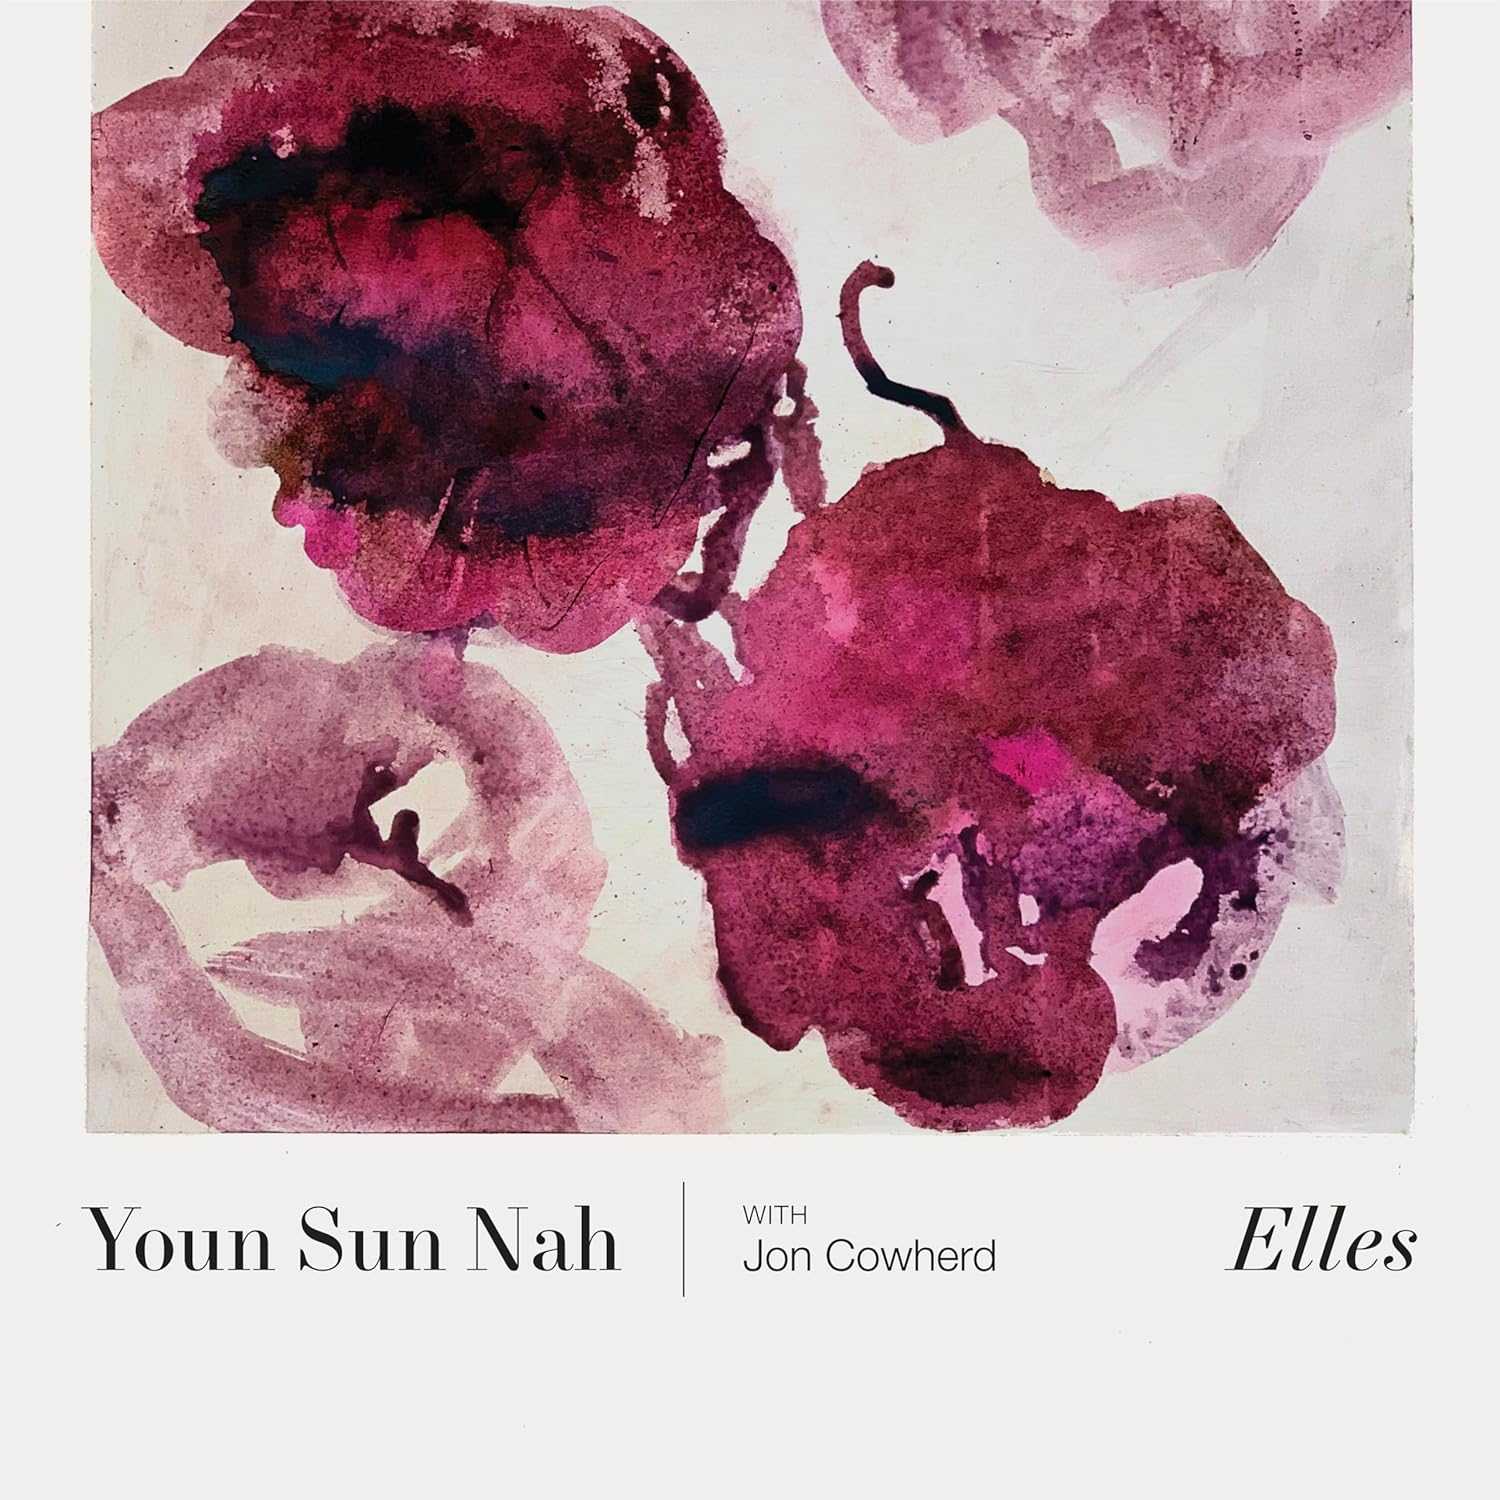 Youn Sun Nah: Elles